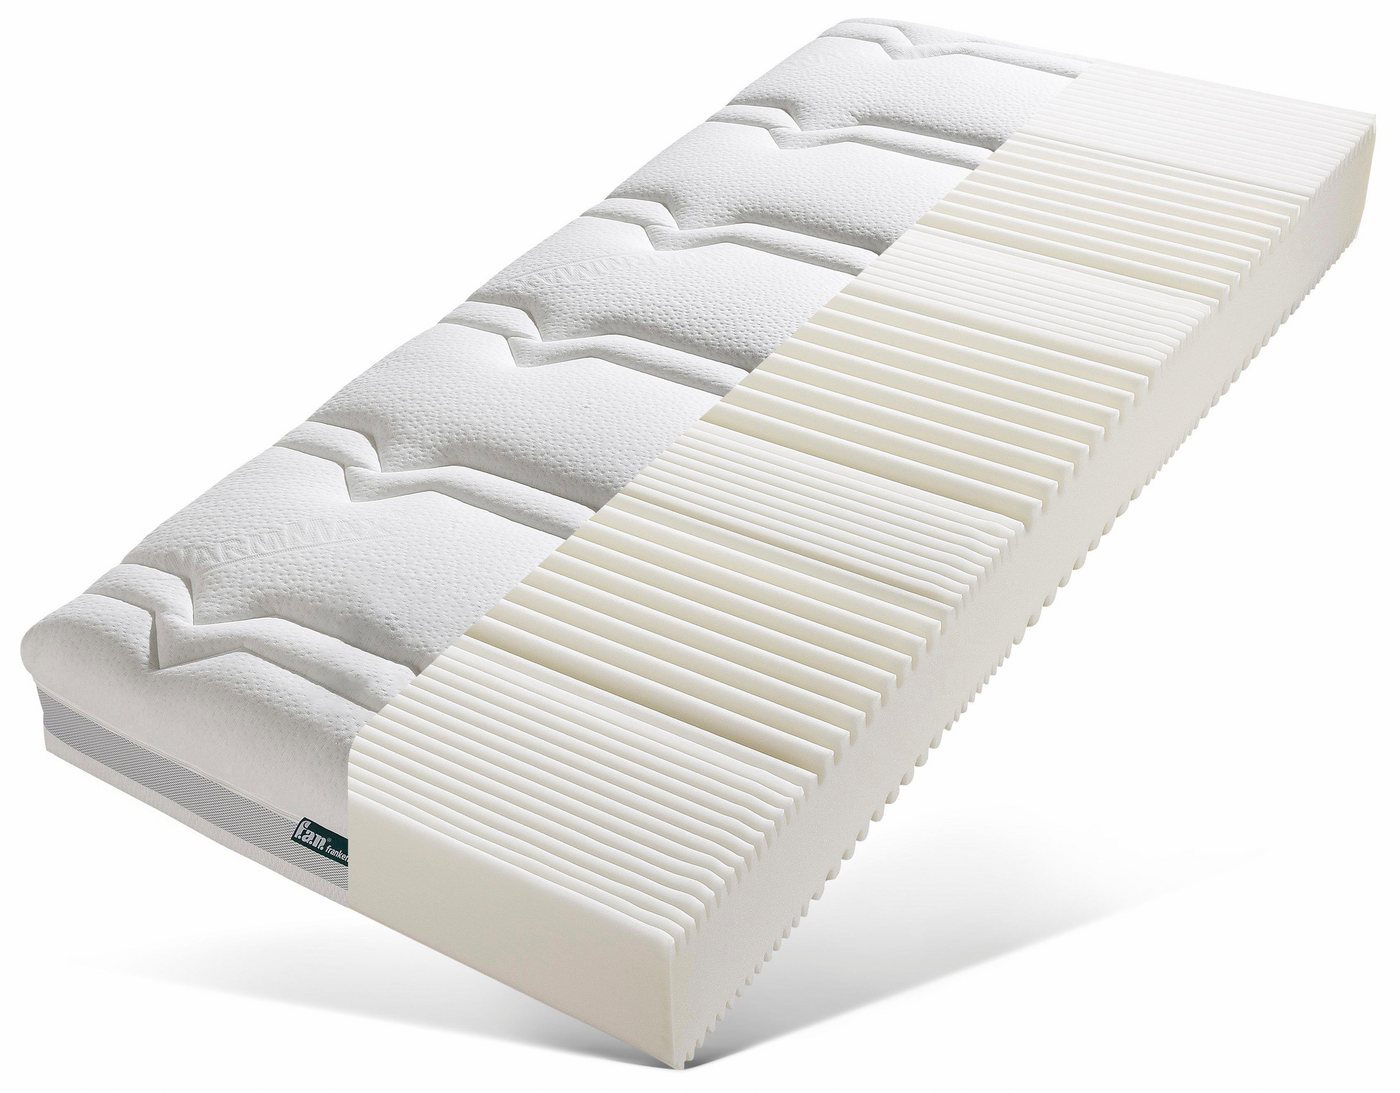 Komfortschaummatratze Mabona S, f.a.n. Schlafkomfort, 23 cm hoch, bekannt aus dem TV! Erhältlich in 4 unterschiedlichen Bezugsvarianten! von f.a.n. Schlafkomfort